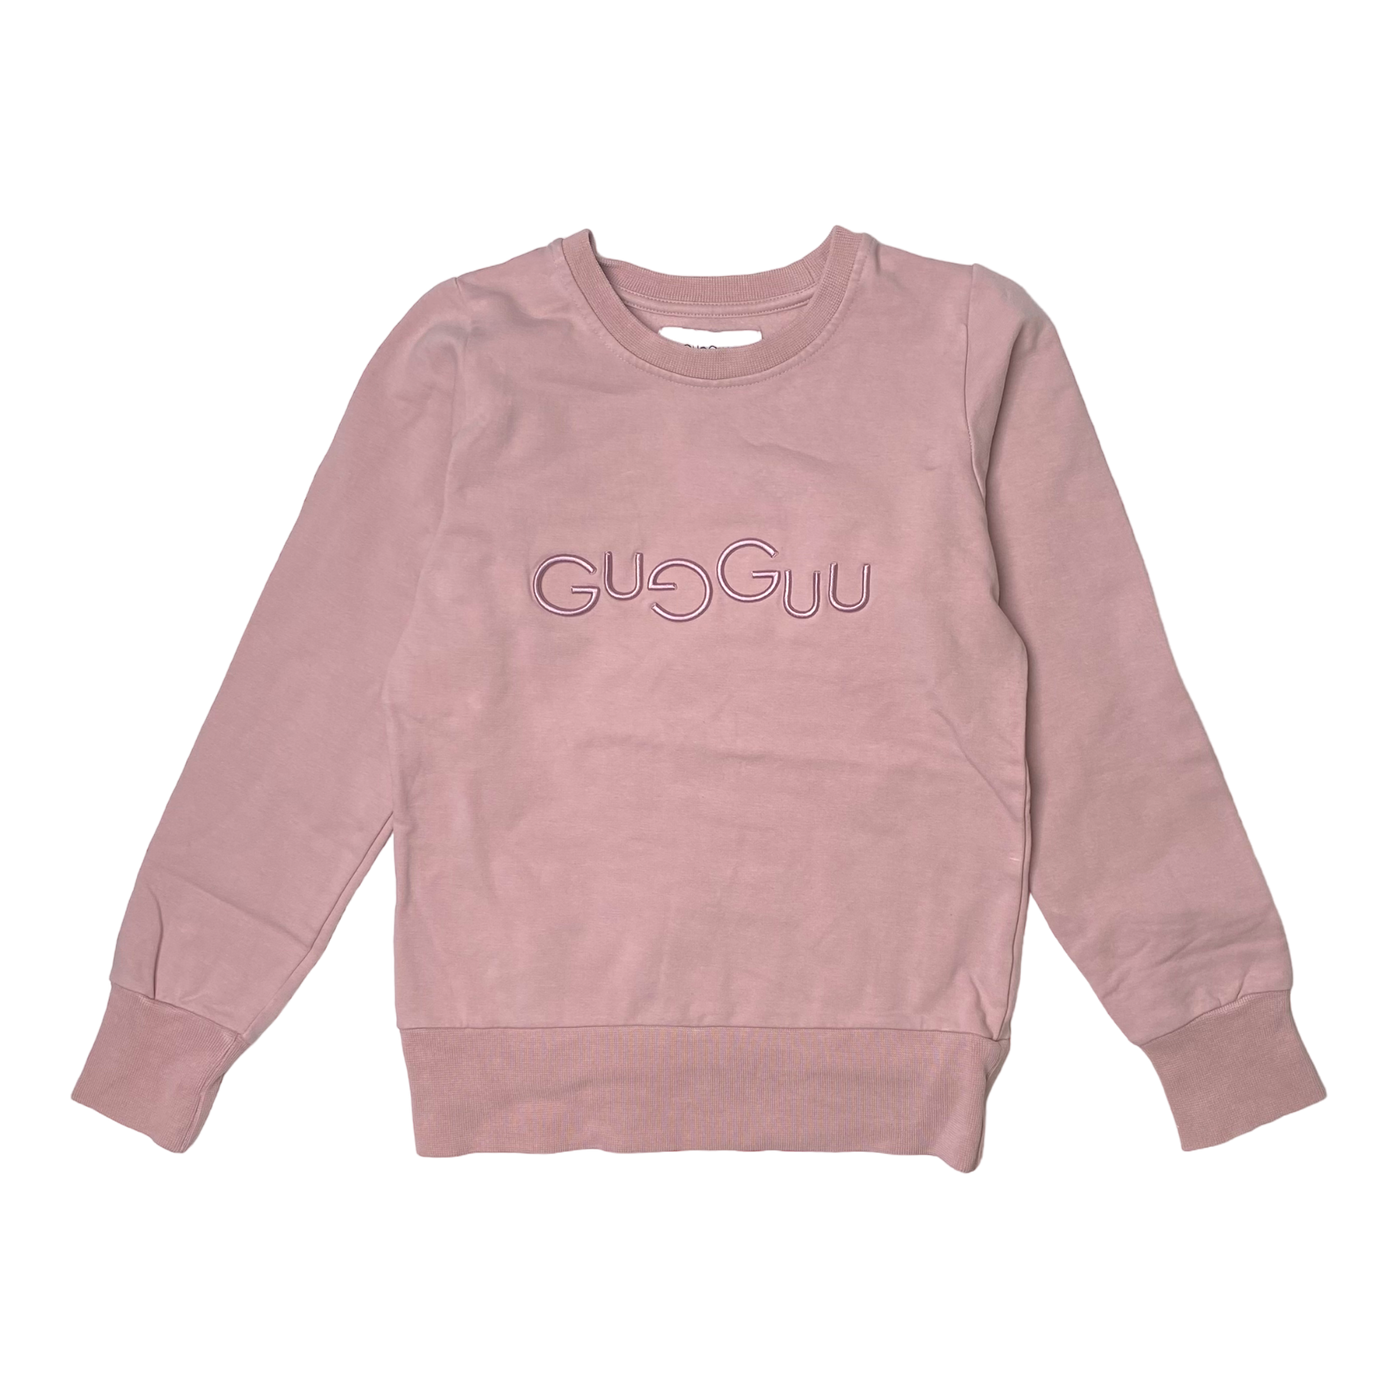 Gugguu sweatshirt, pink | 134cm